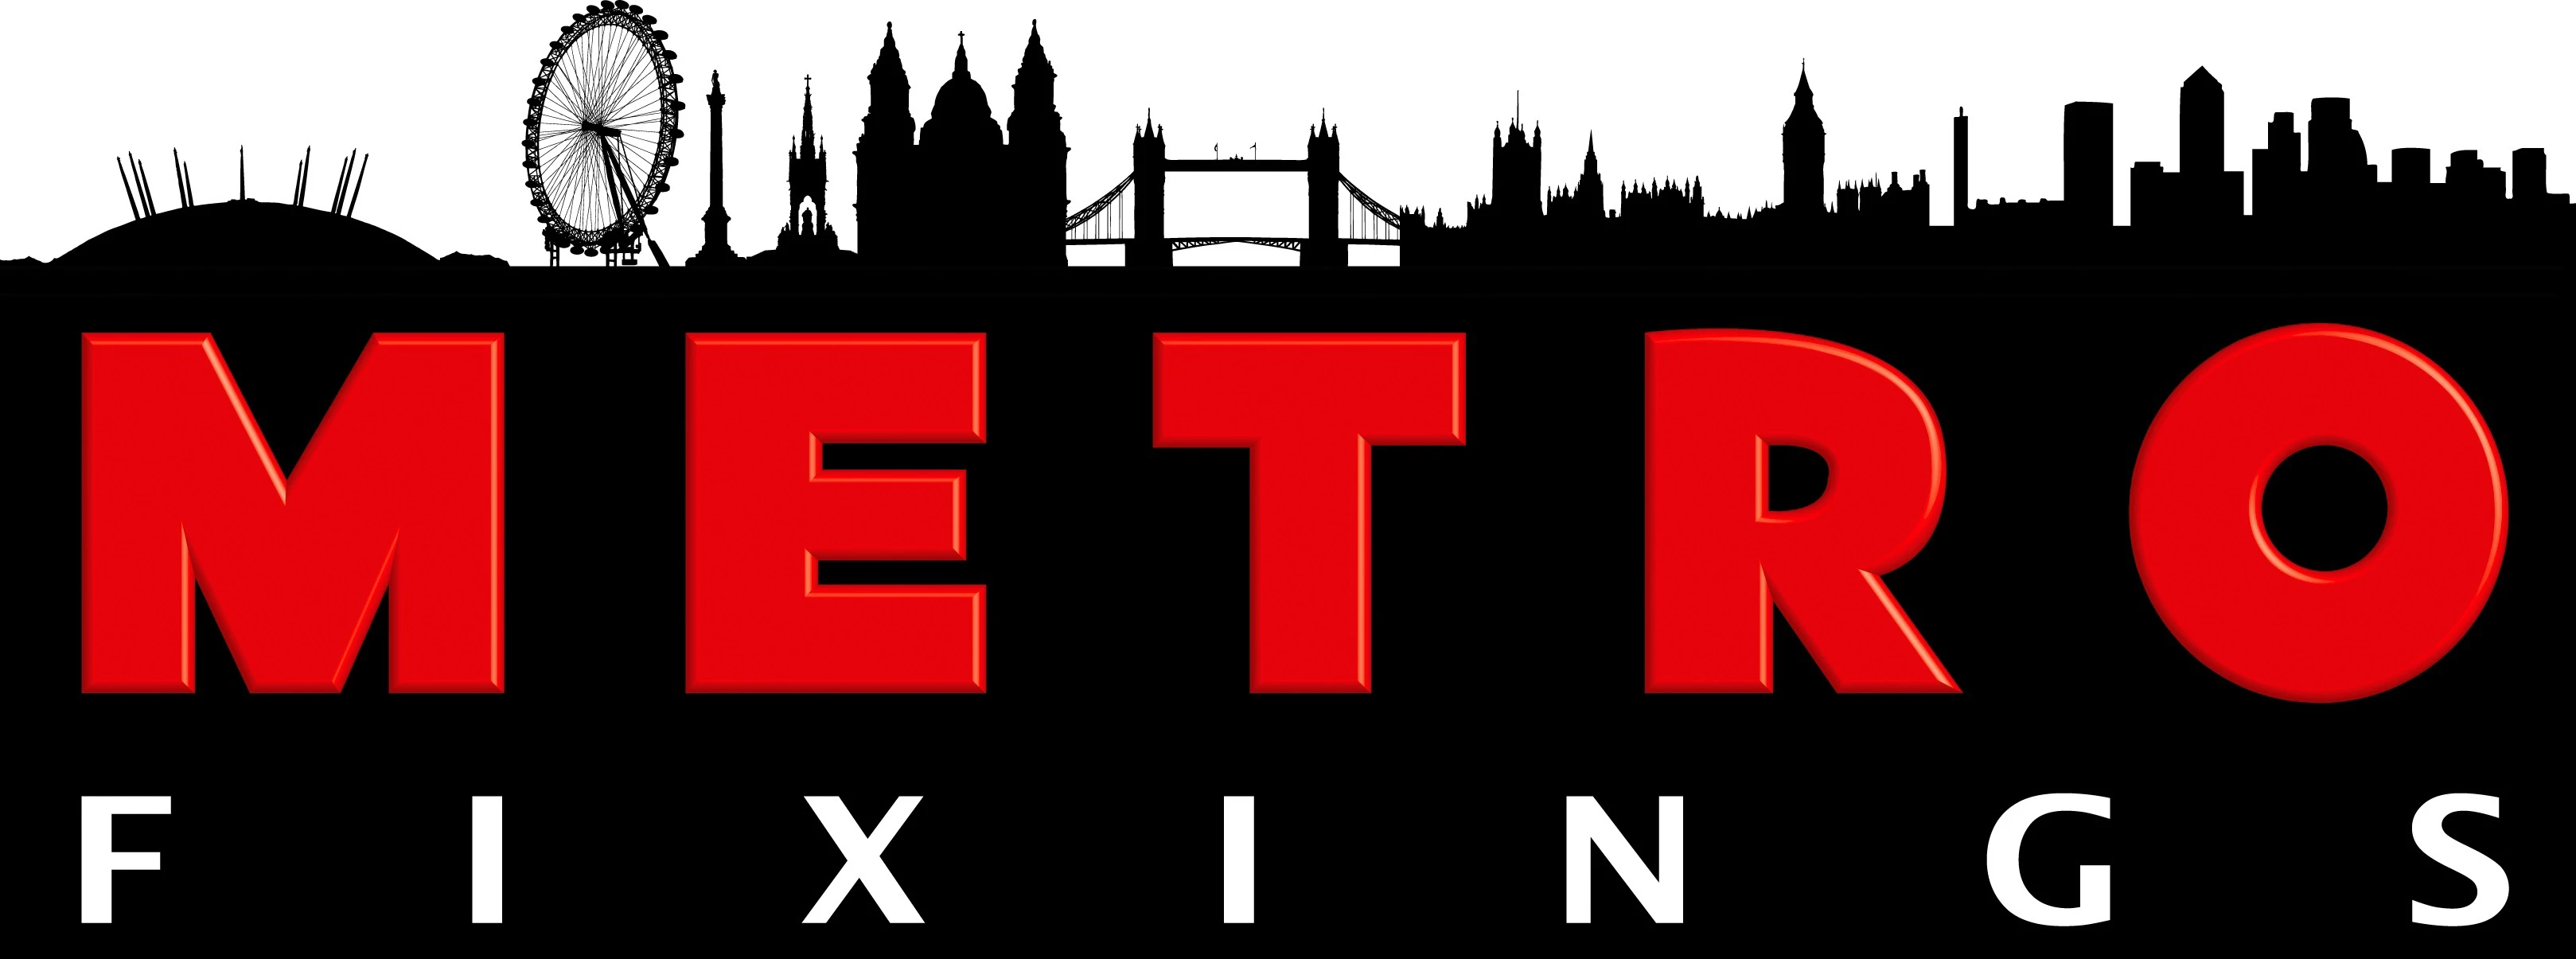 metrofixings.co.uk